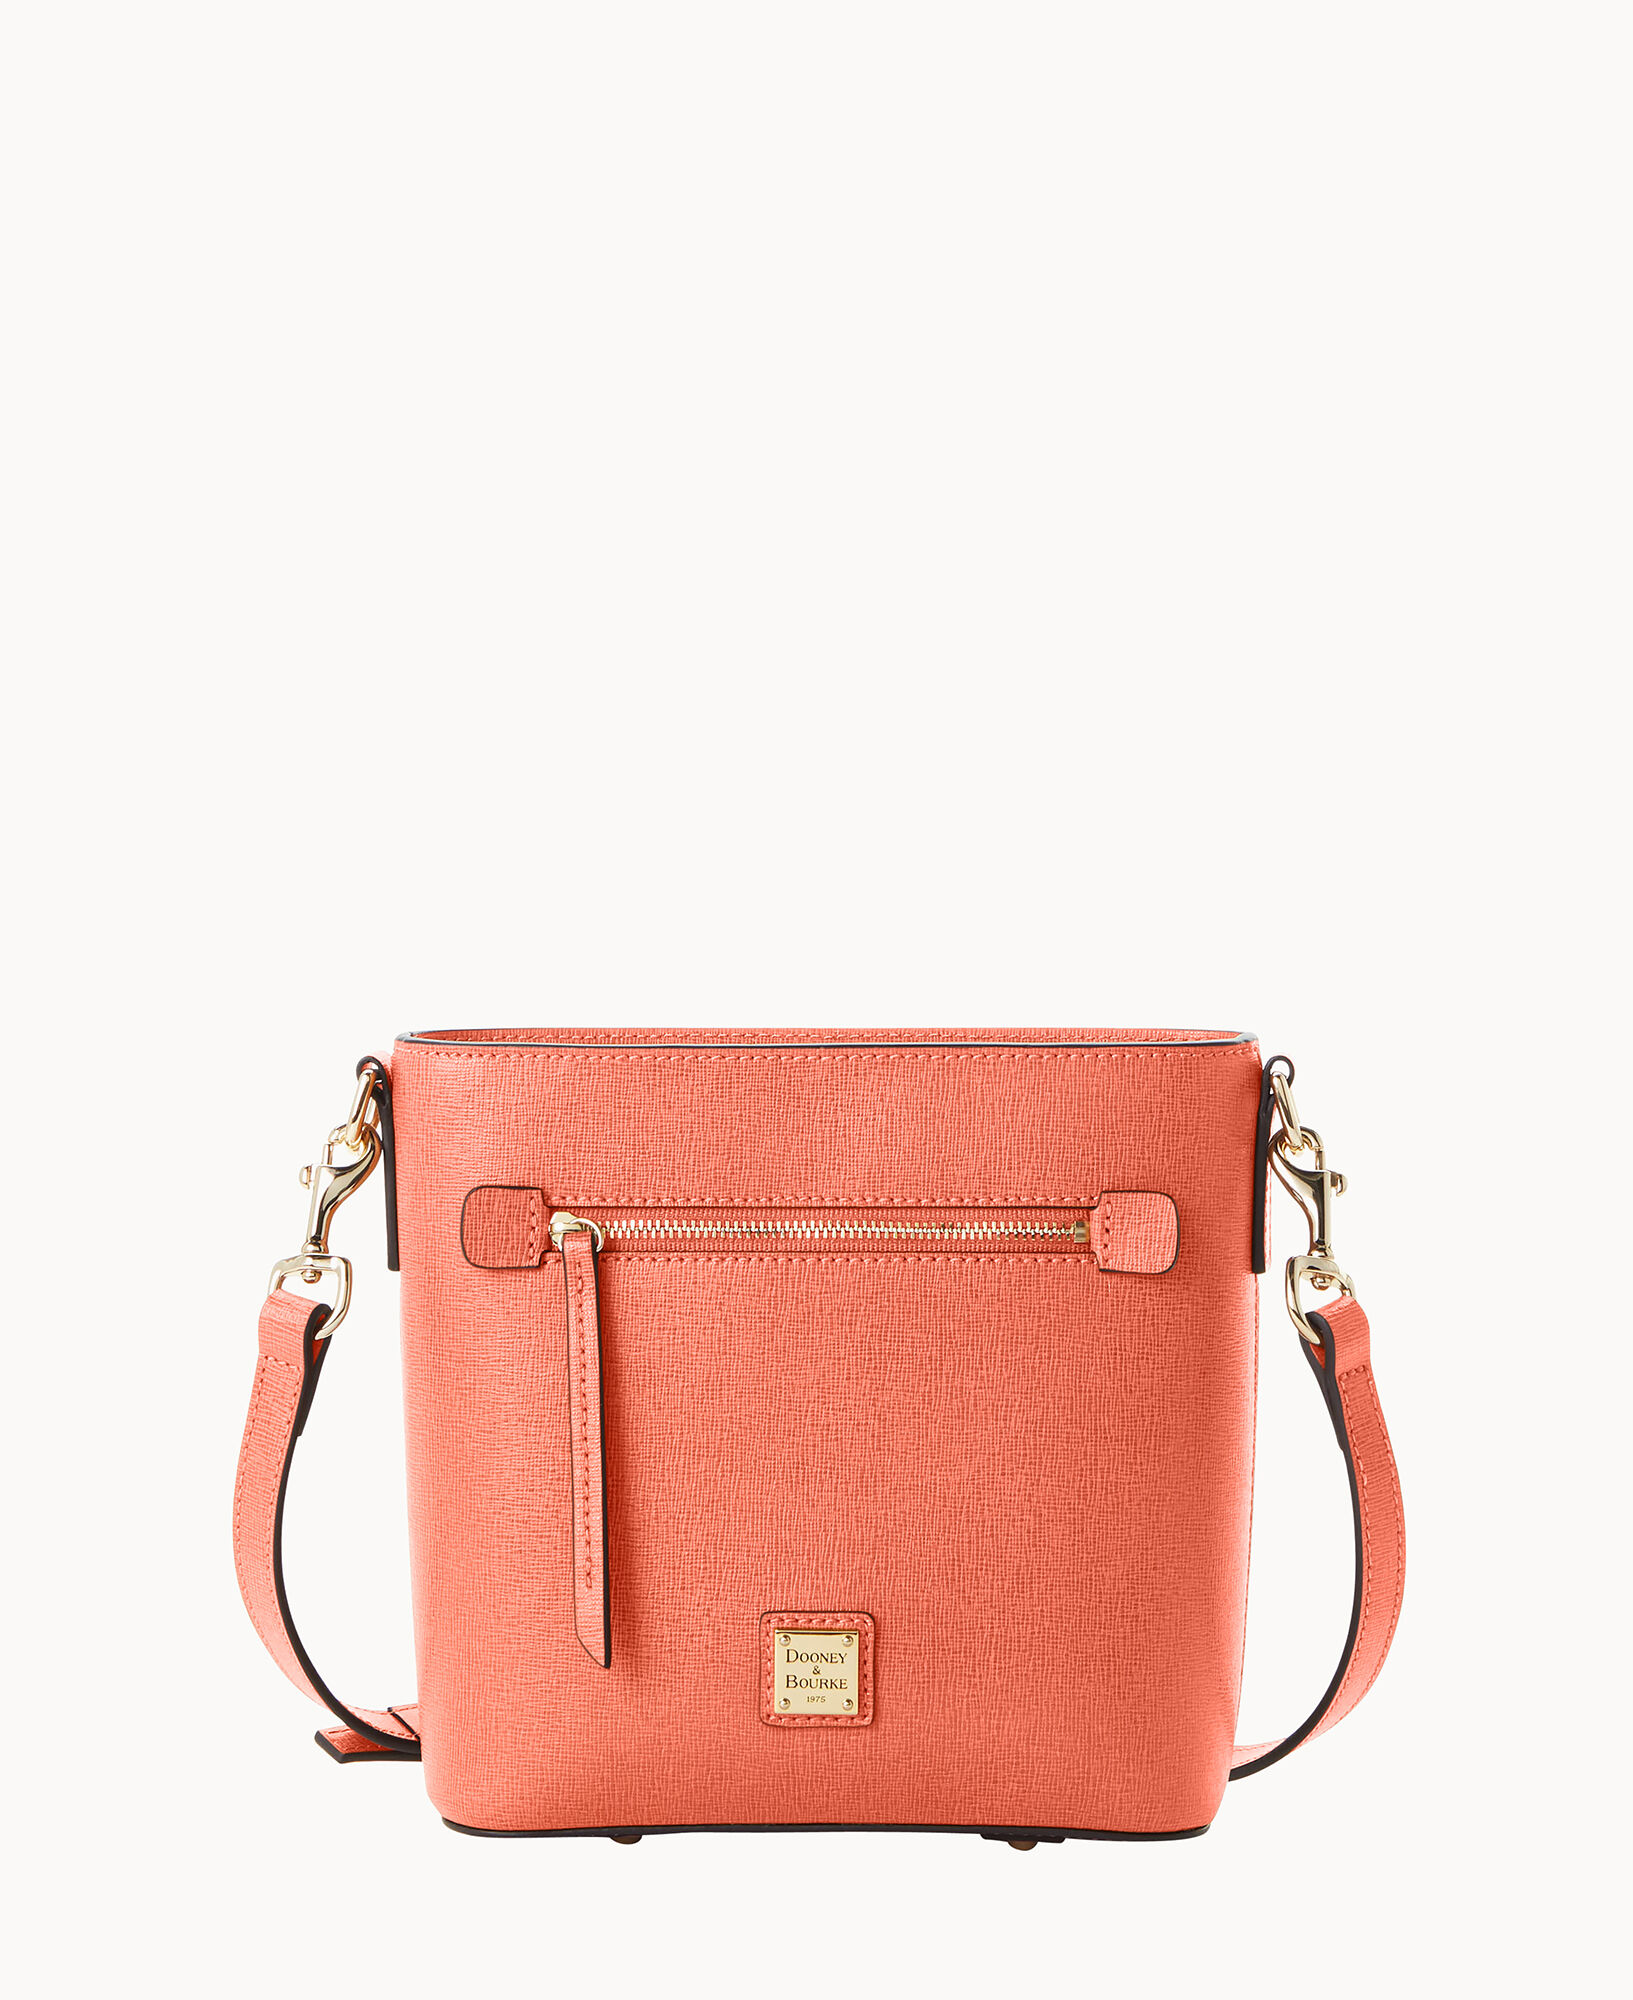 Dooney Bourke Saffiano Small Zip Crossbody Bag, Pink